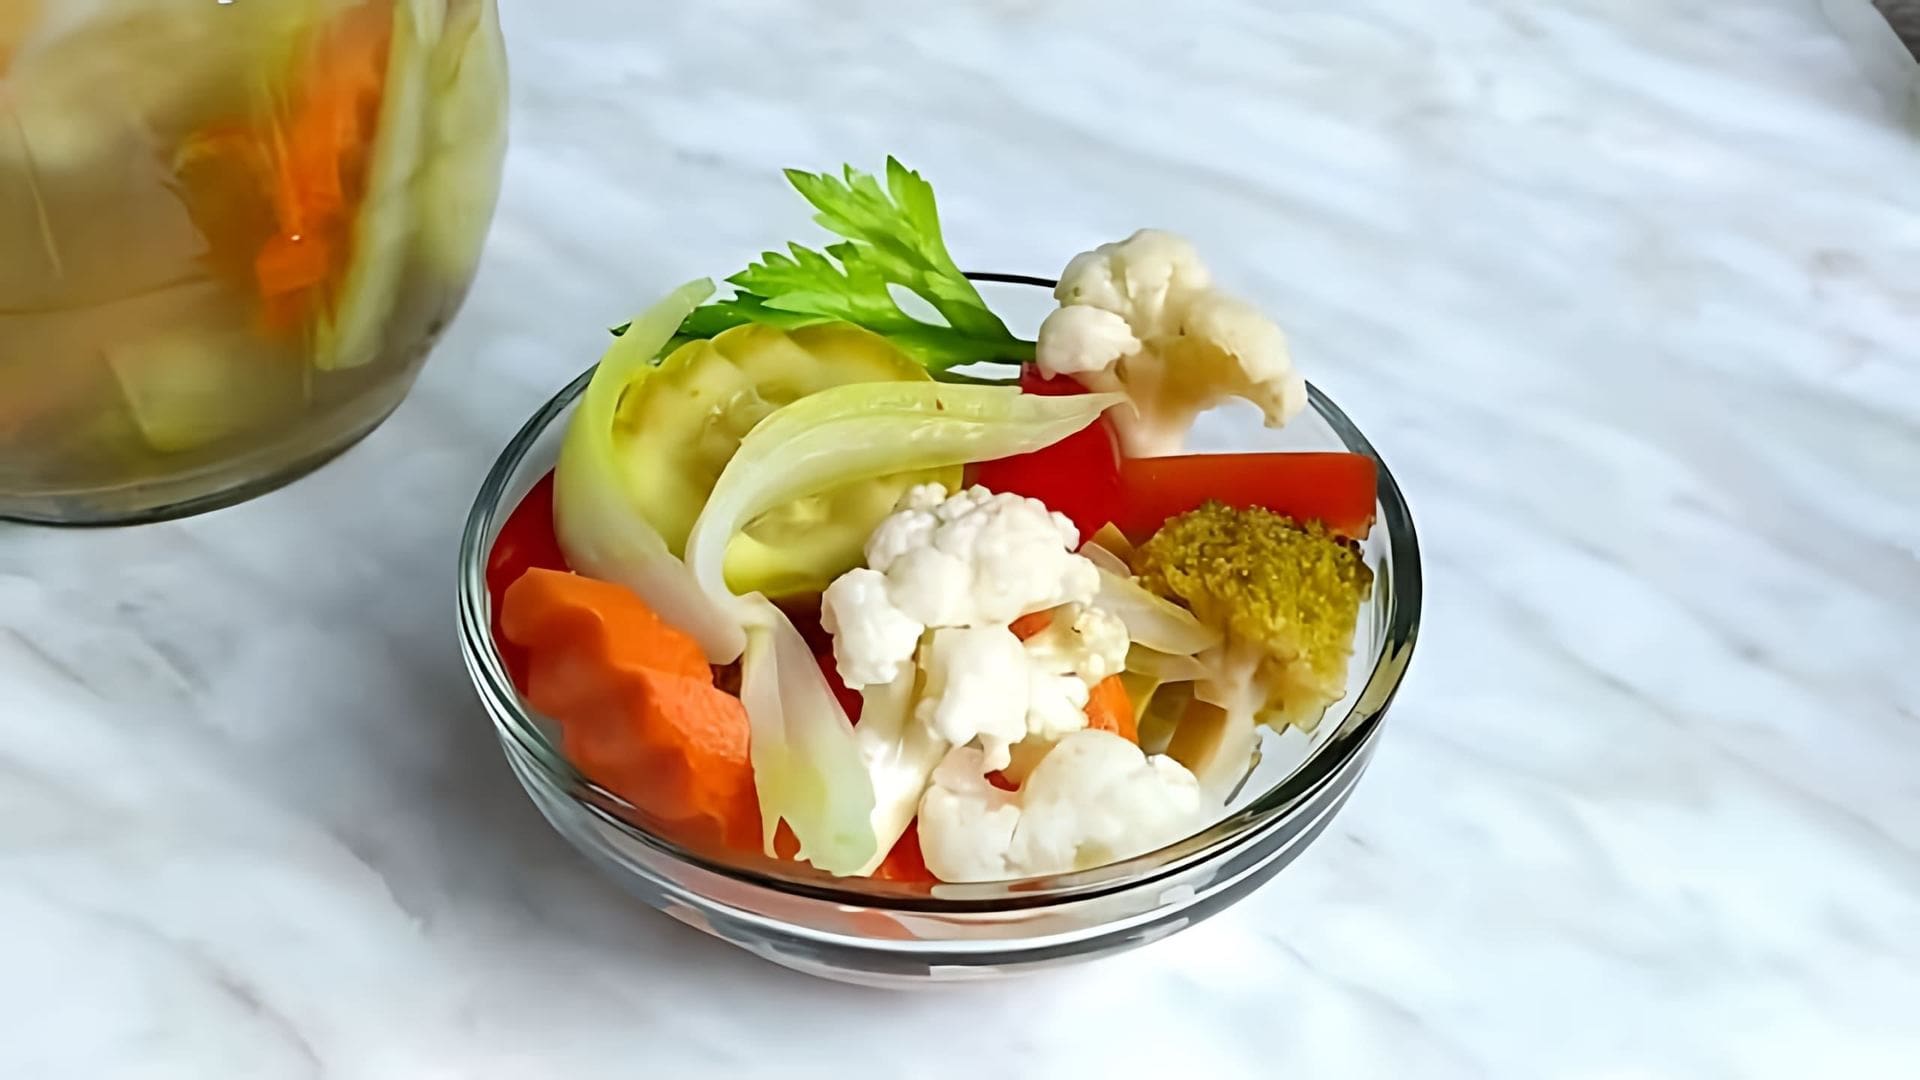 В этом видео рассказывается о том, как приготовить итальянское блюдо "Giardiniera" - ферментированные овощи